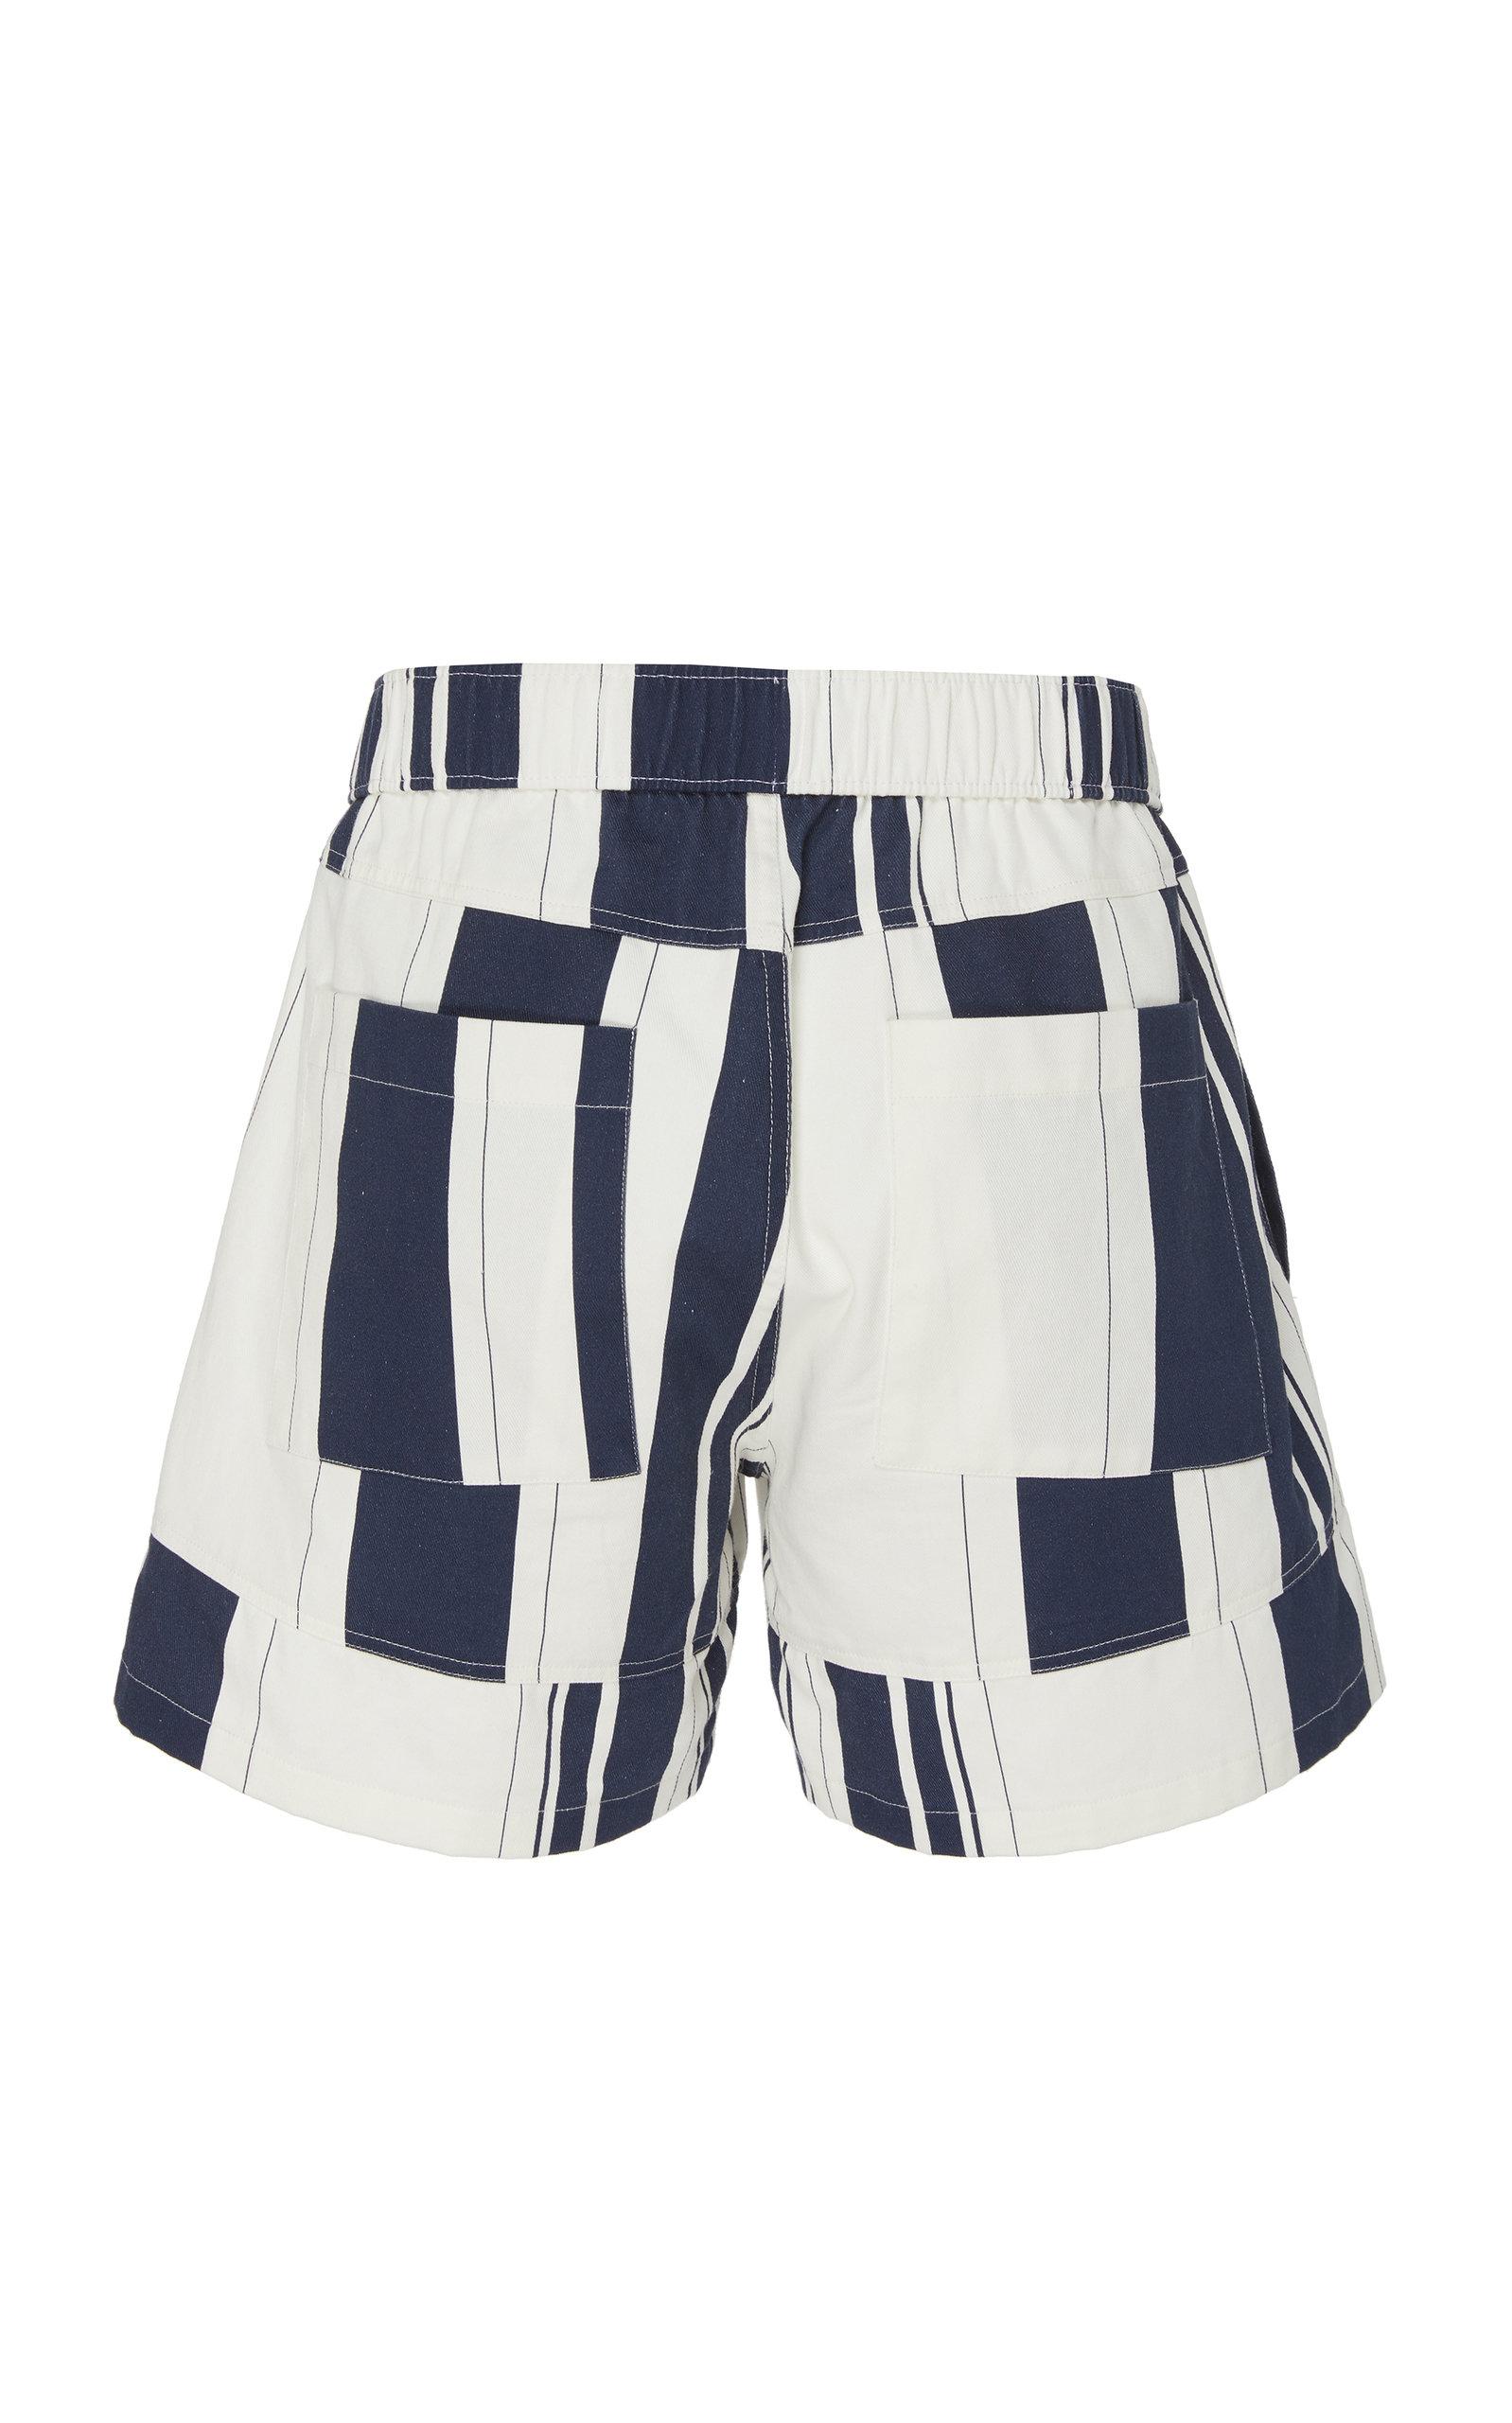 Jacquemus Le Short Pêcheur Striped Cotton Shorts in Blue for Men - Lyst